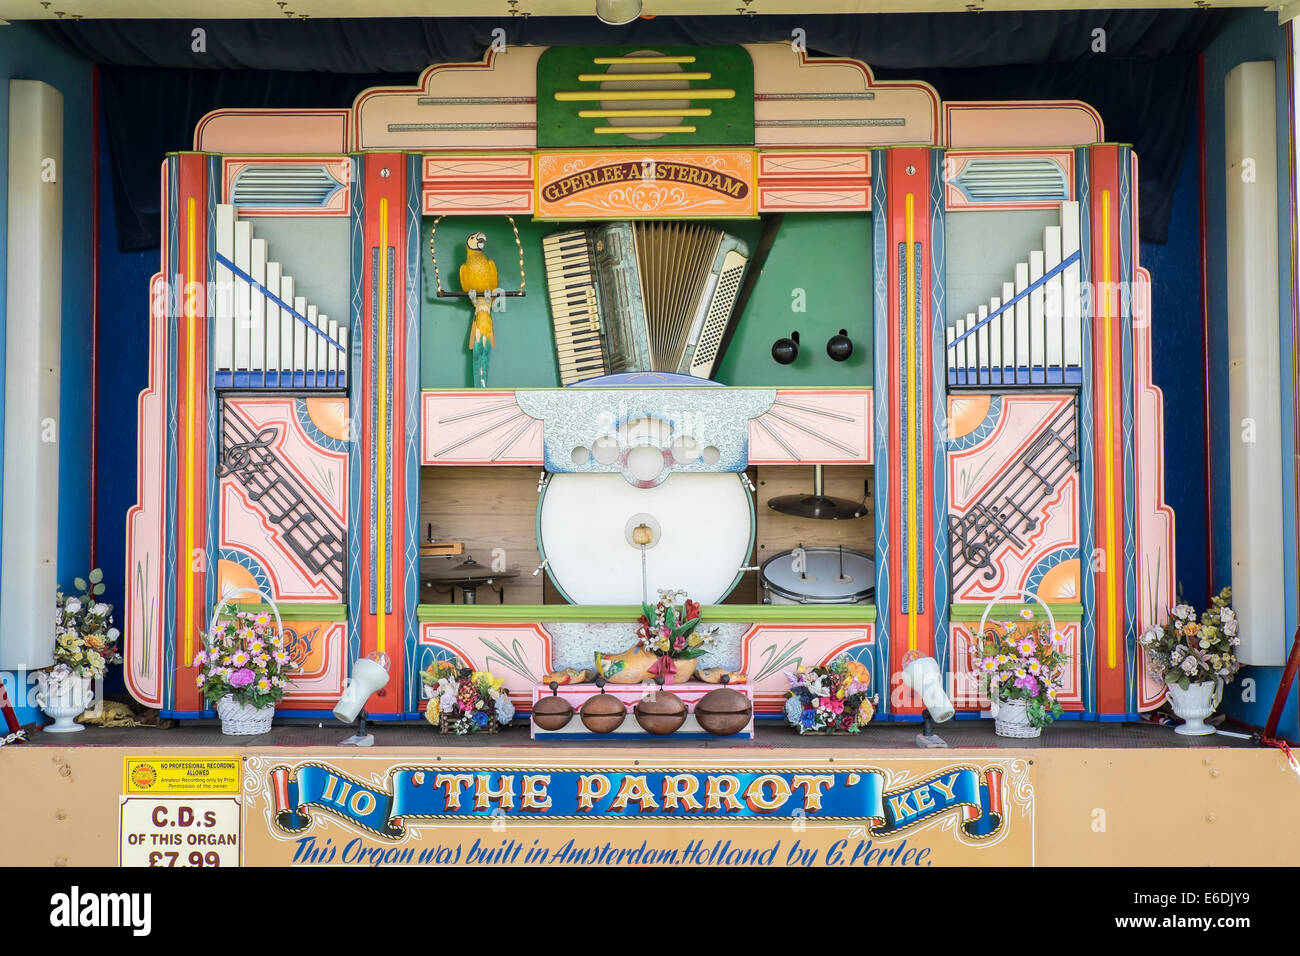 Le Parrot key 110 fairground organ fait à Amsterdam sur l'affichage à l'afficher pour la masse de vapeur Cambridgeshire Rallye et Country Fair Banque D'Images